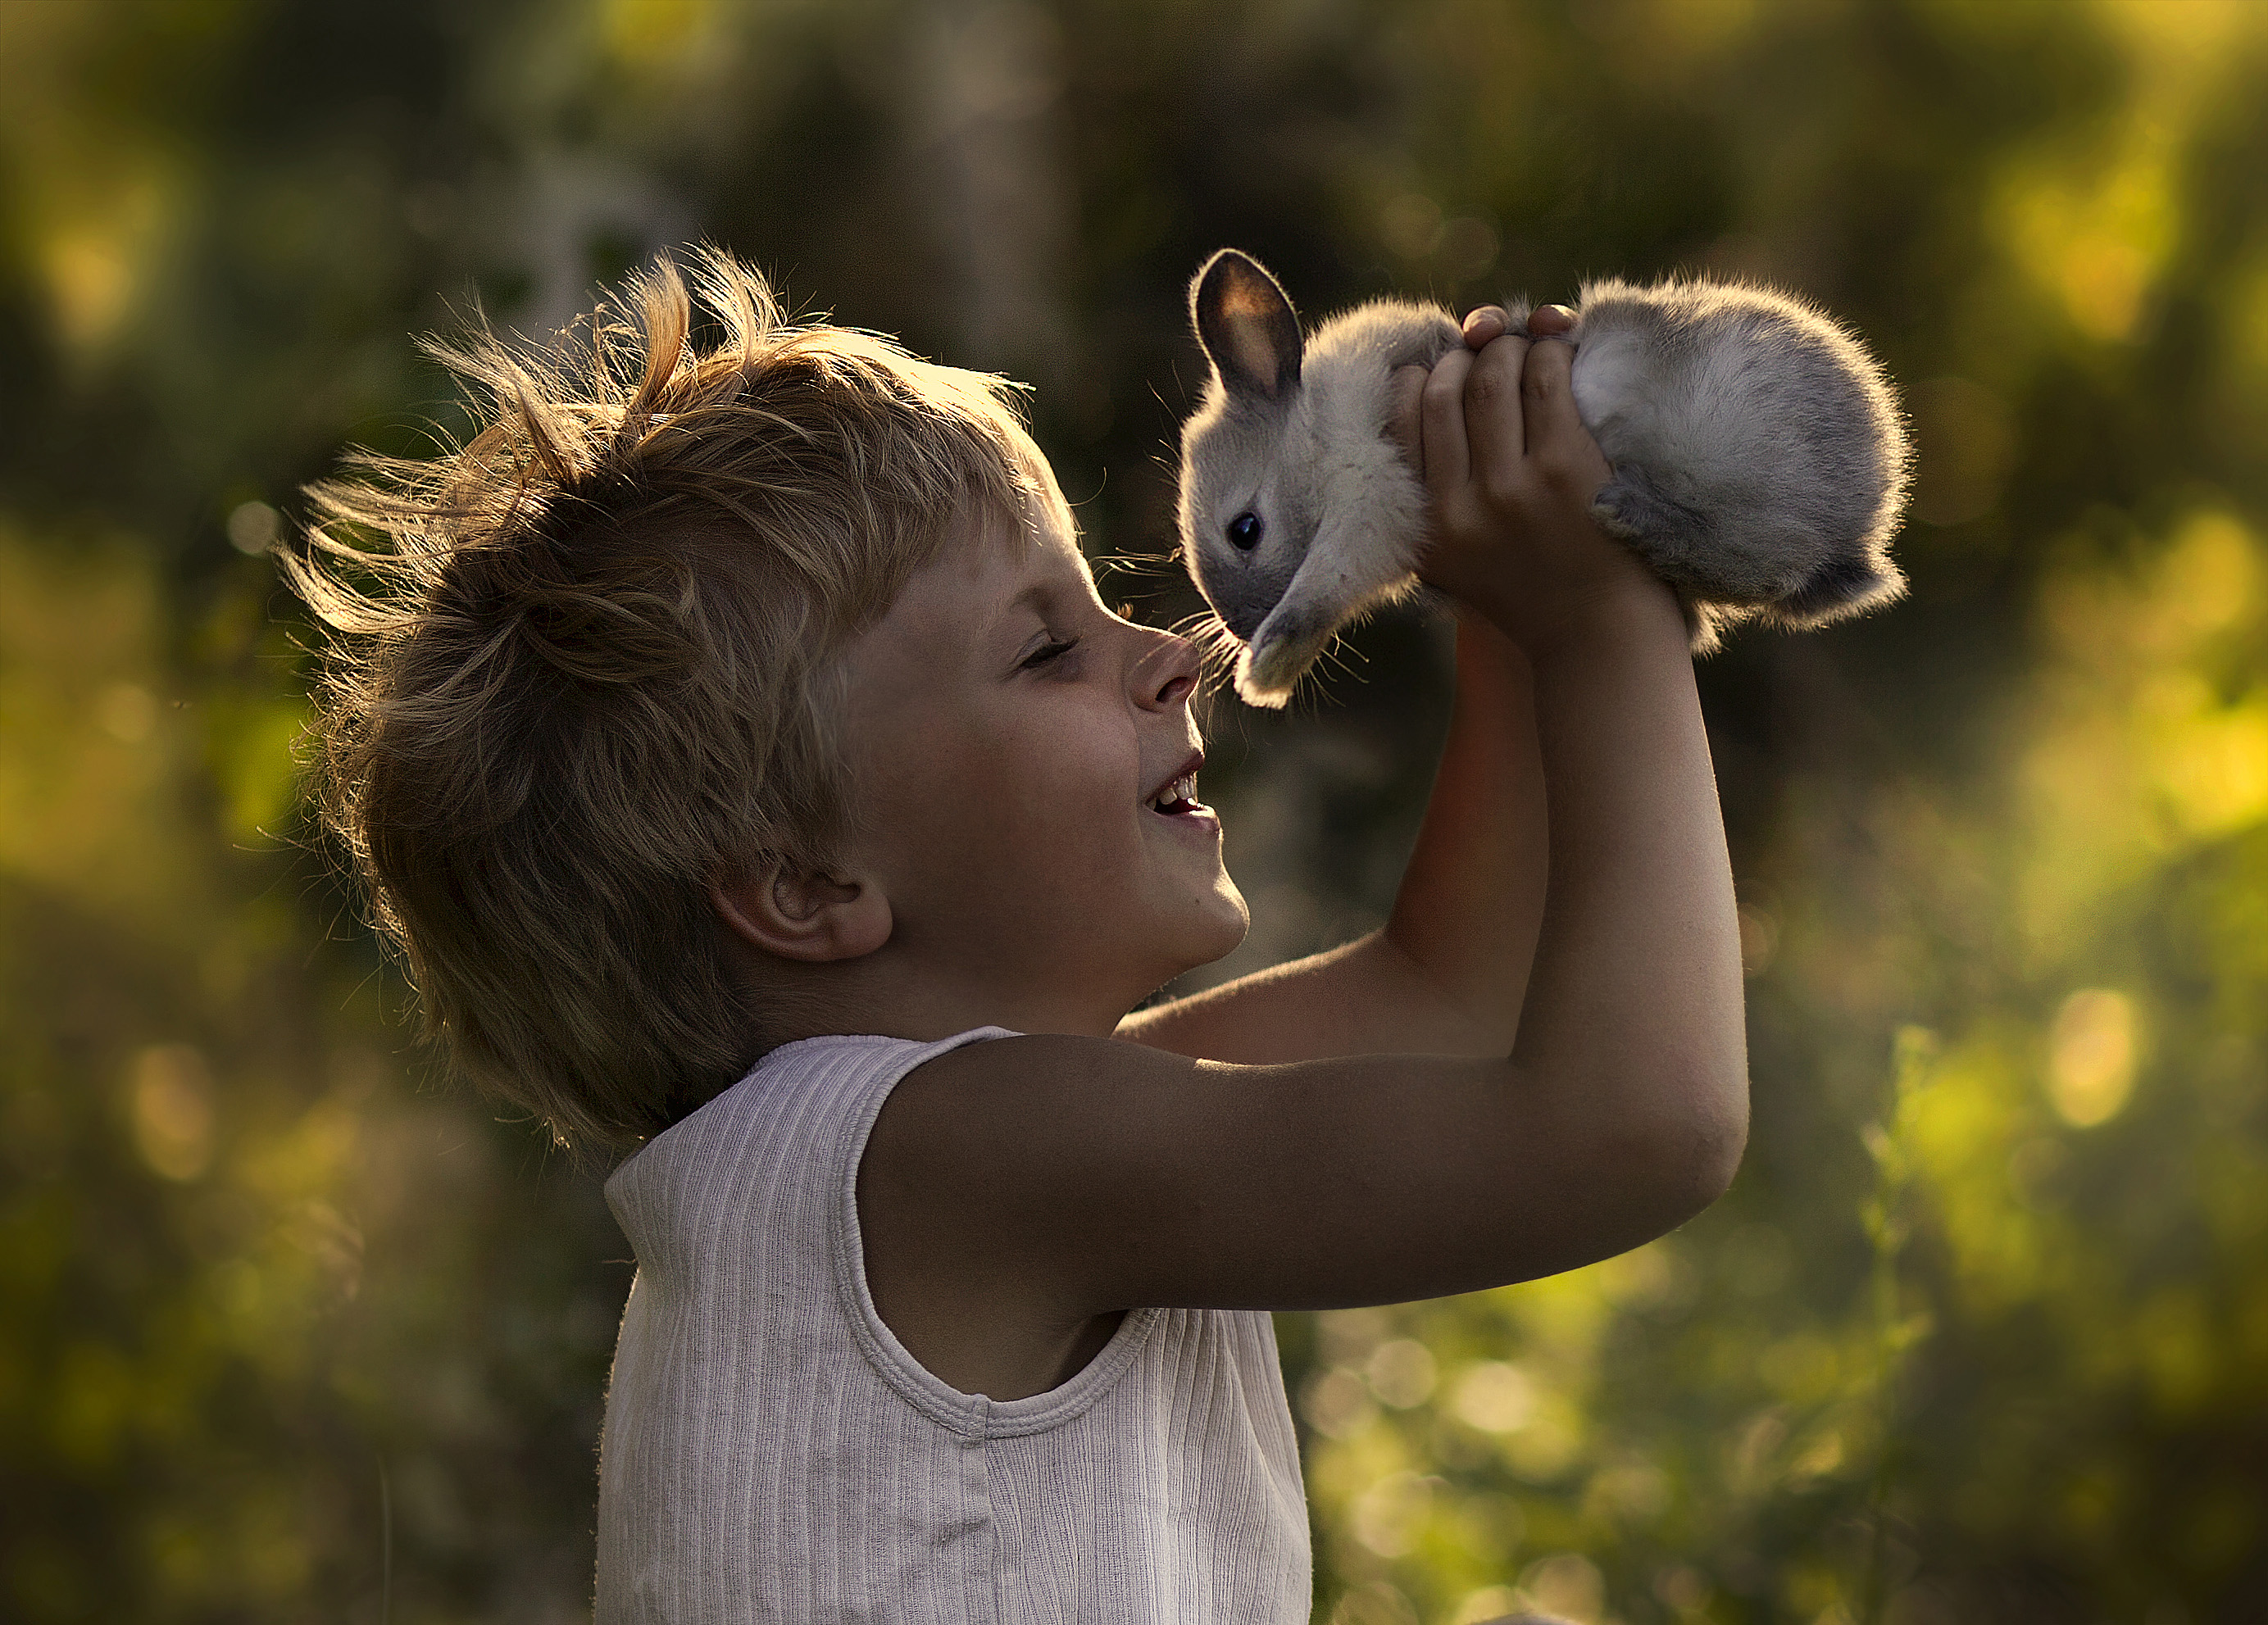 Картинка добро. Елена Шумилова фотограф. Для детей. Животные. Маленькие дети и животные. Люди и животные.